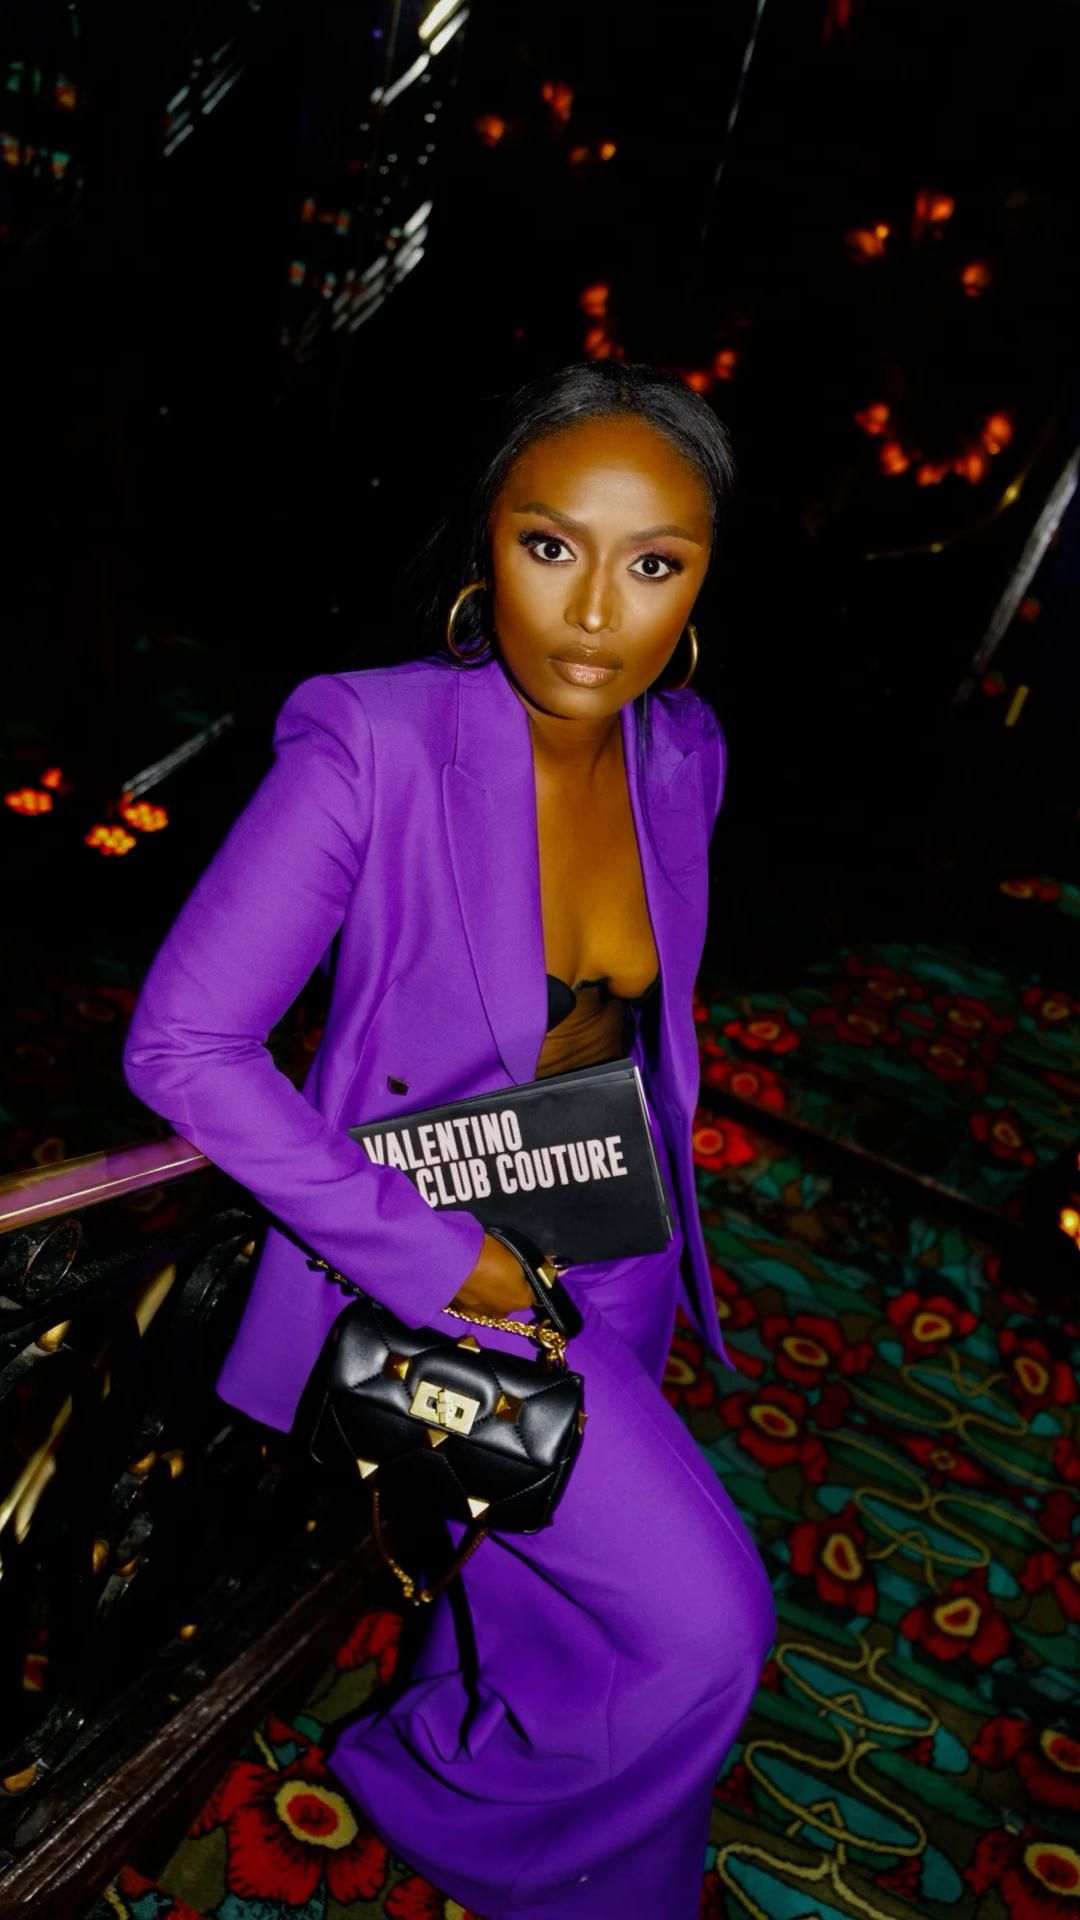 Purple Suit Outfit Ideas for
  Ladies